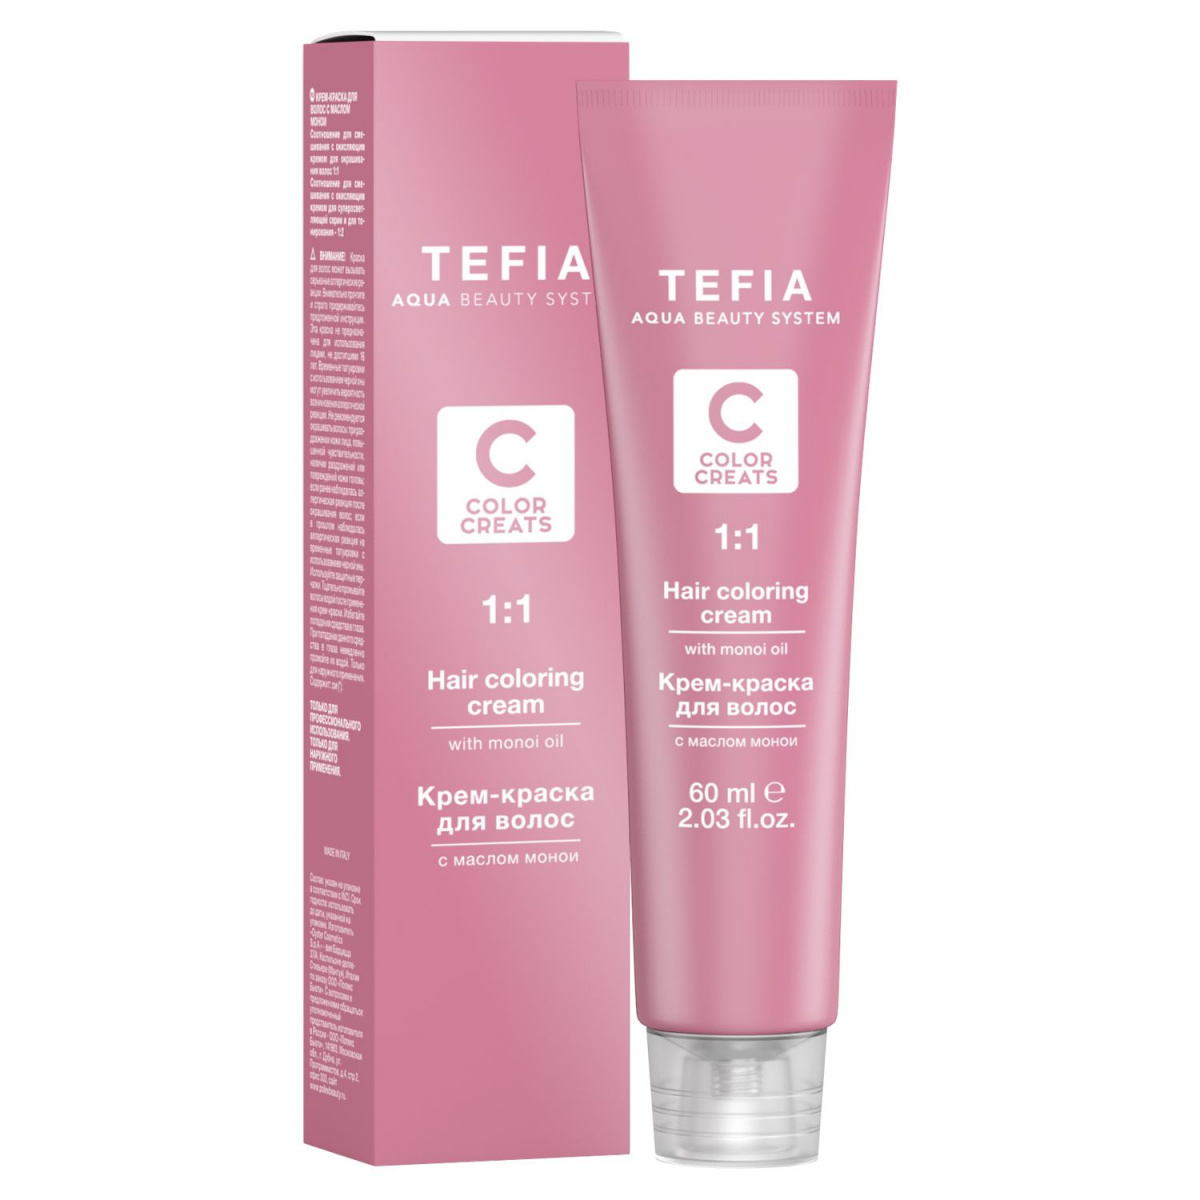 Tefia Color Creats - Крем-краска для волос с маслом монои 0.1 чистый синий 60 мл Tefia (Италия) купить по цене 387 руб.